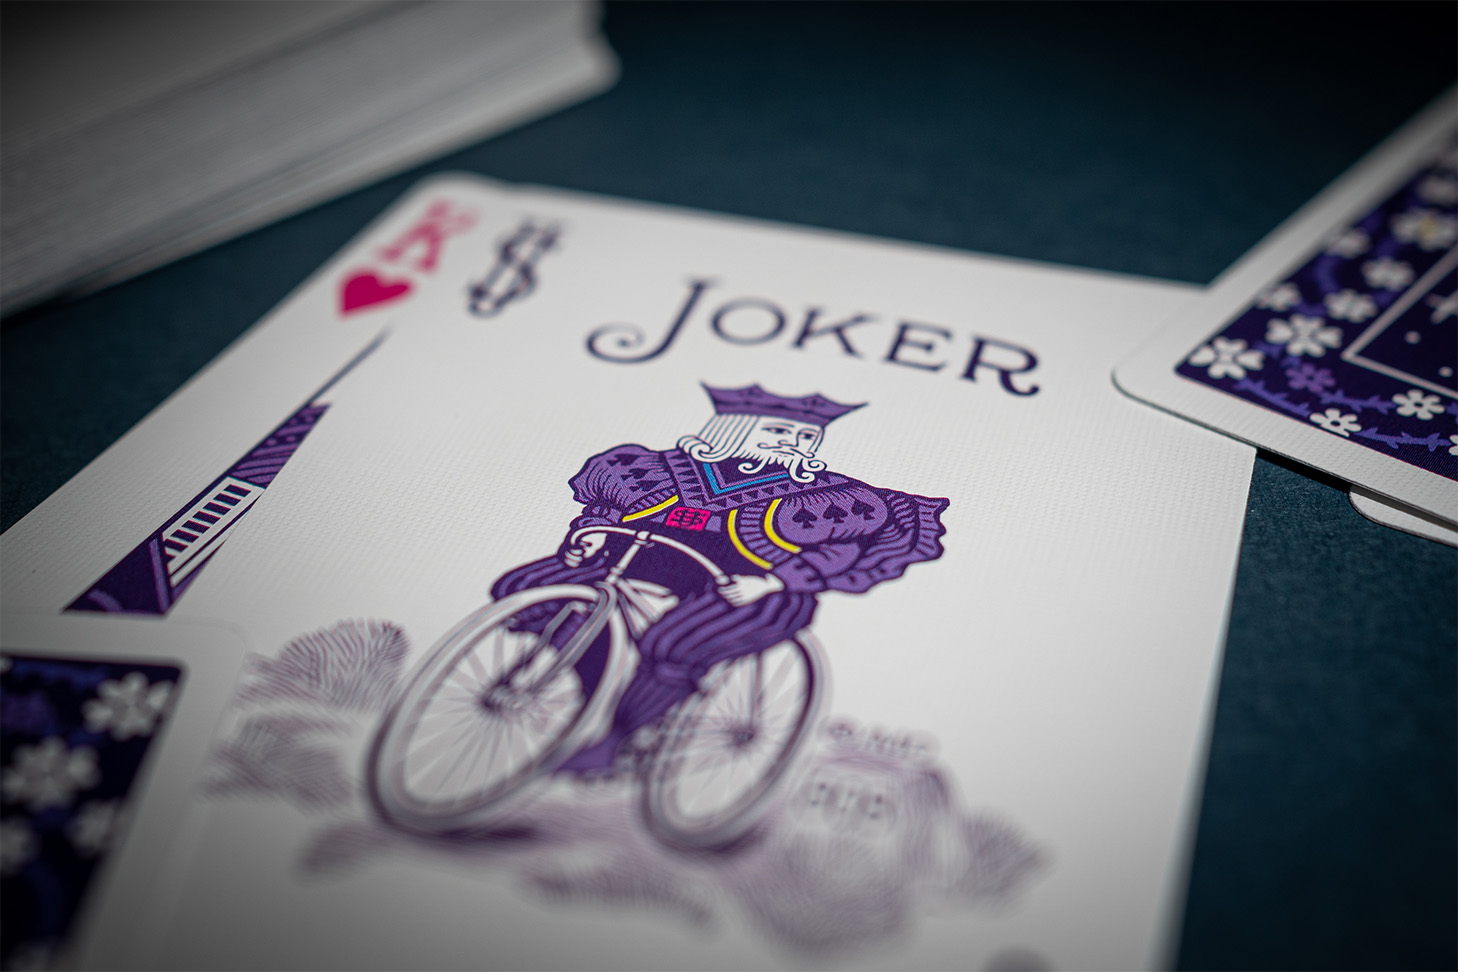 Die Bicycle Creatives Unicorn Karten Herz König und Joker liegen angeschnitten sichtbar auf einem dunklem Hintergrund. Daneben liegt ein Kartenstapel mit sichtbarem Backdesign.